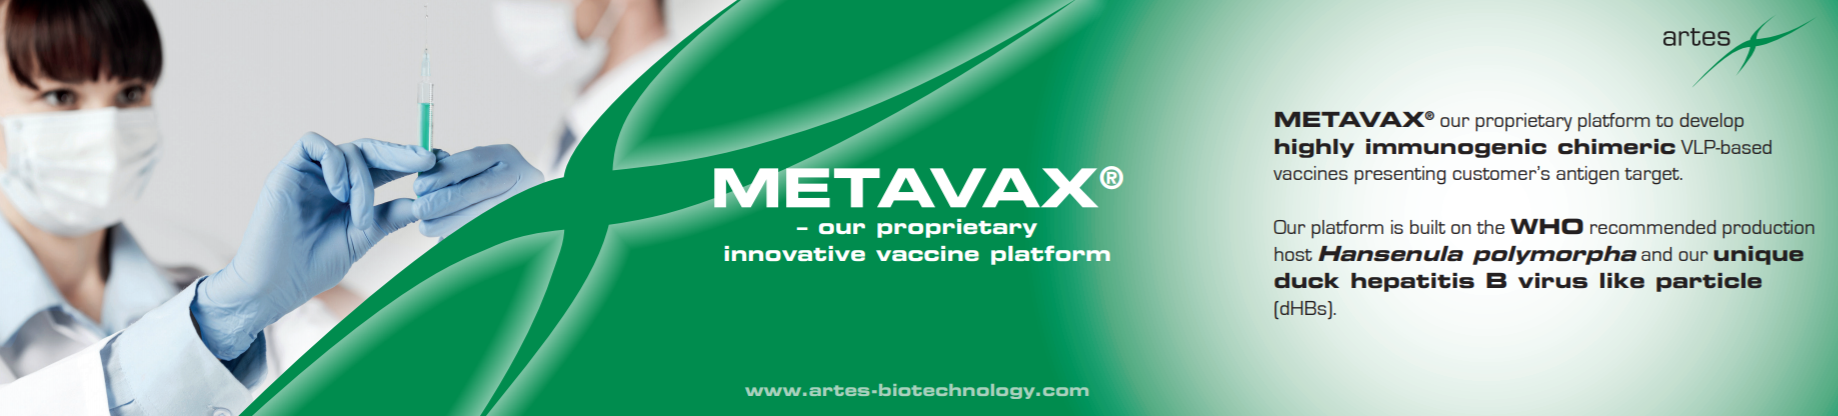 METAVAX® – Proprietary Innovative Vaccine Platform